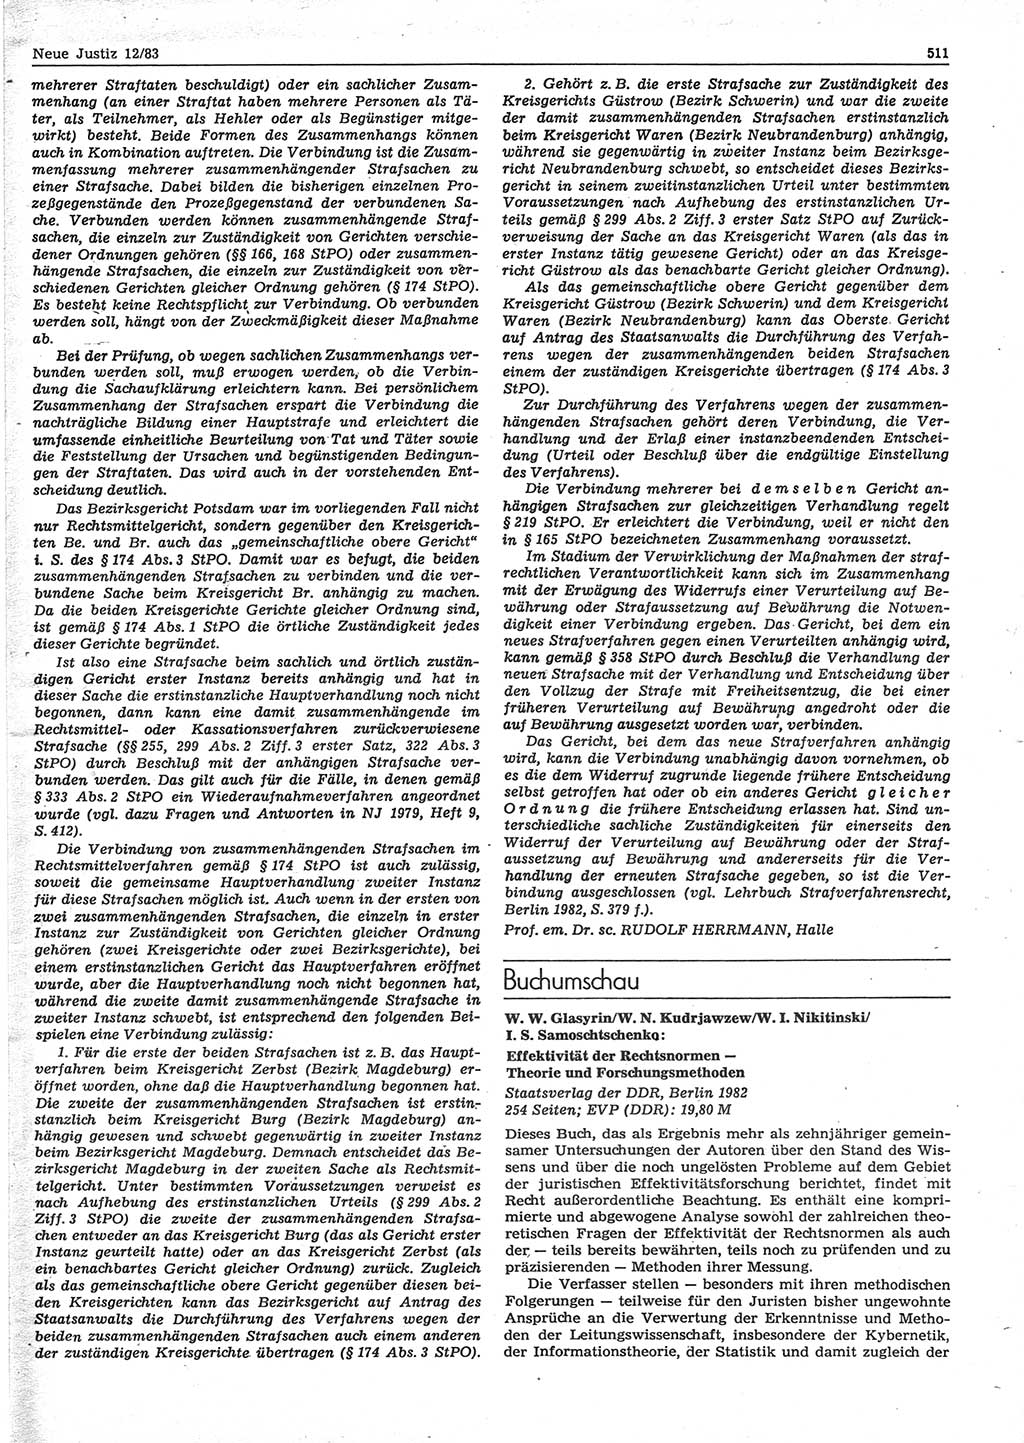 Neue Justiz (NJ), Zeitschrift für sozialistisches Recht und Gesetzlichkeit [Deutsche Demokratische Republik (DDR)], 37. Jahrgang 1983, Seite 511 (NJ DDR 1983, S. 511)